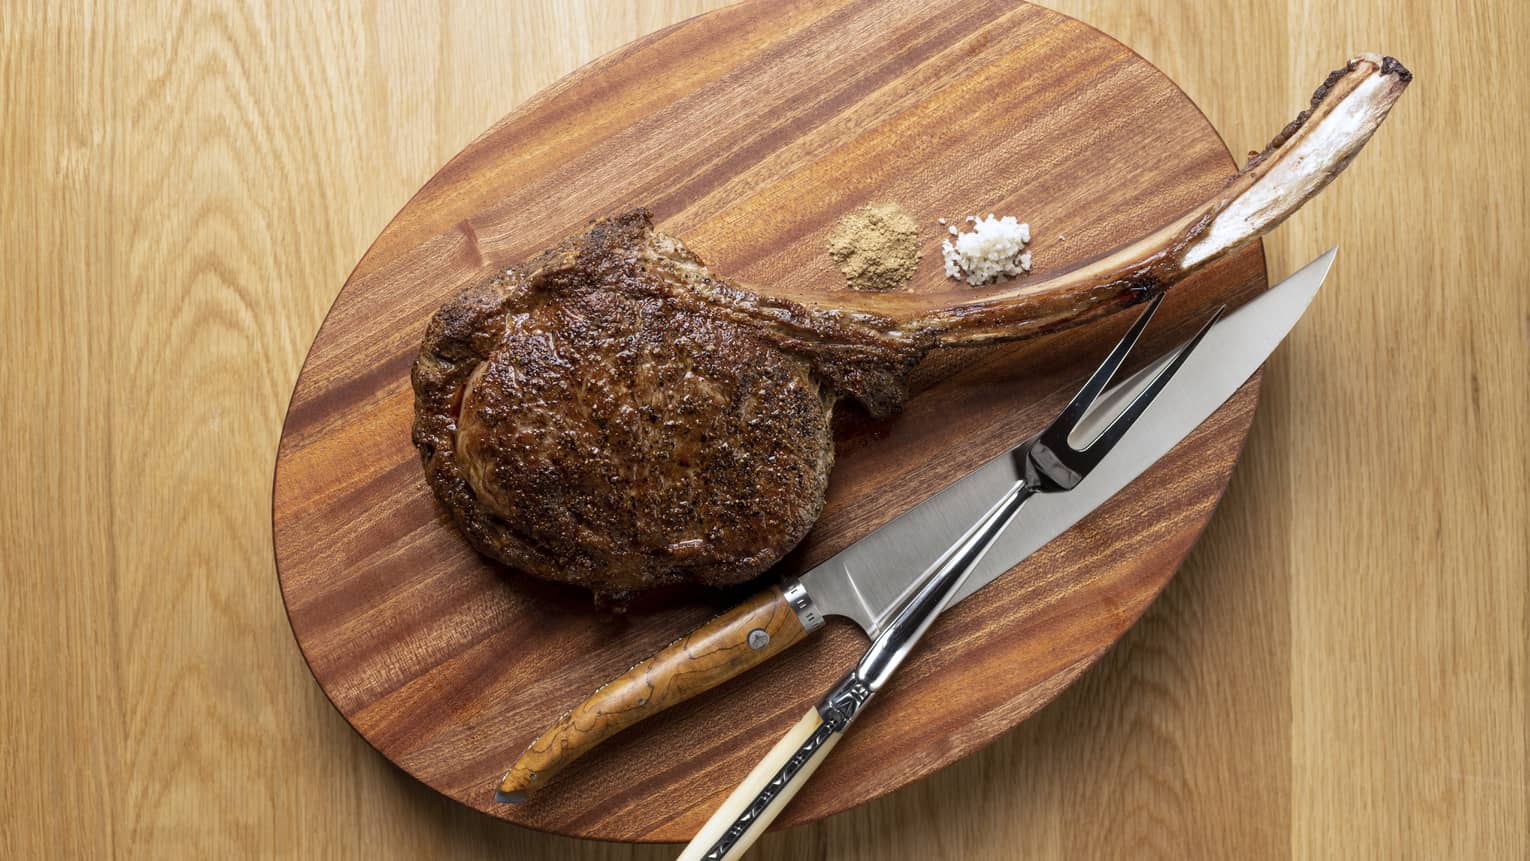 Tomahawk steak on wooden oval carving board